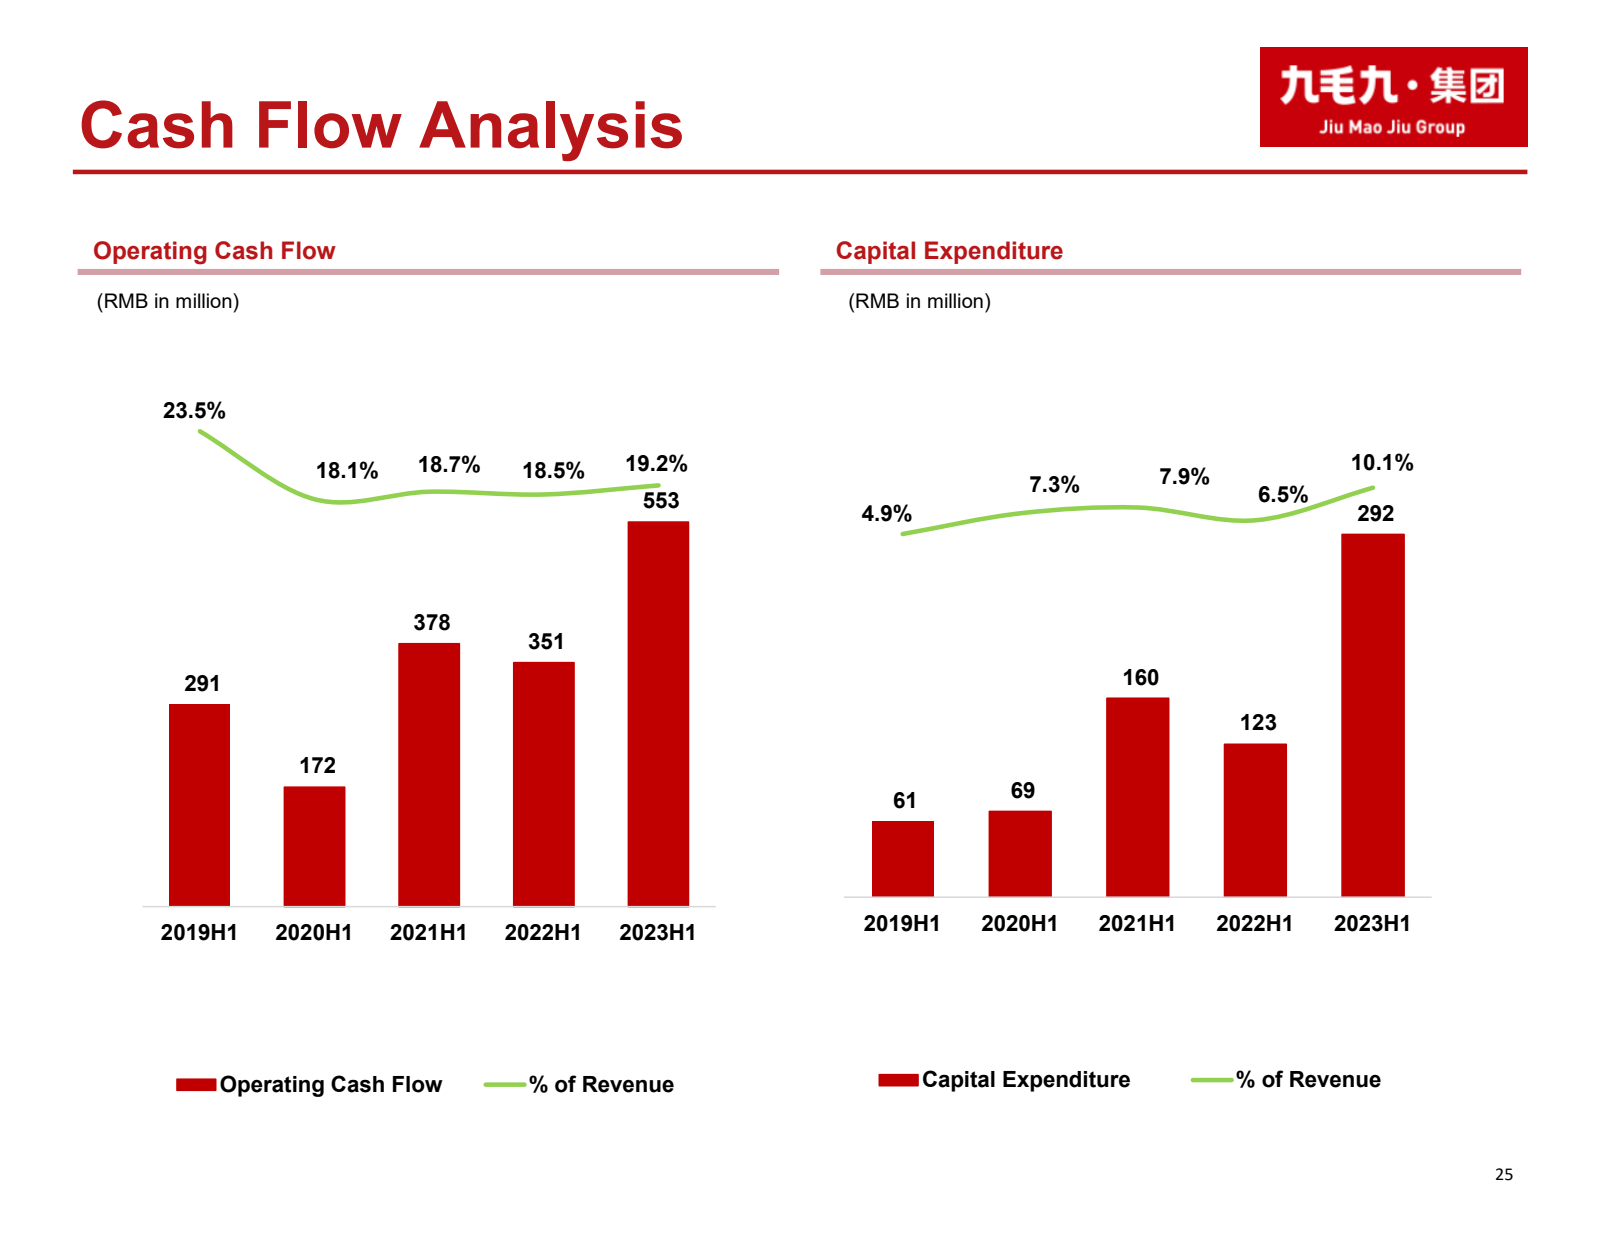 Cash Flow Analysis 
